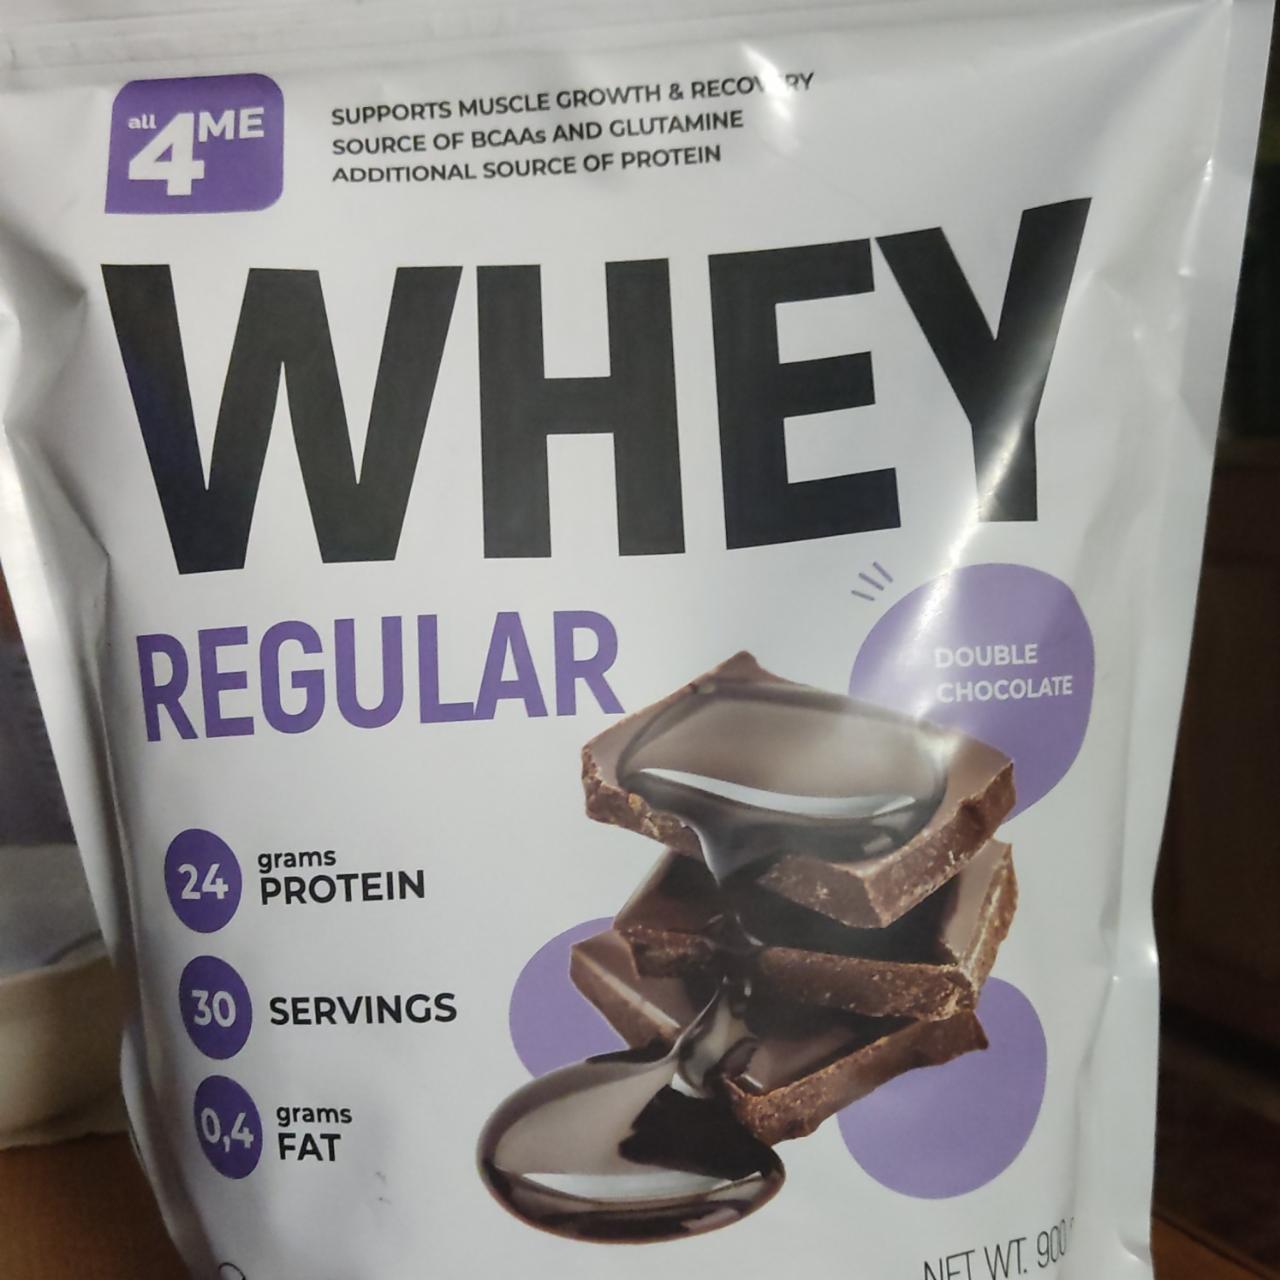 Фото - протеин сывороточный классический со вкусом шоколада Whey Regular double chocolate All4me